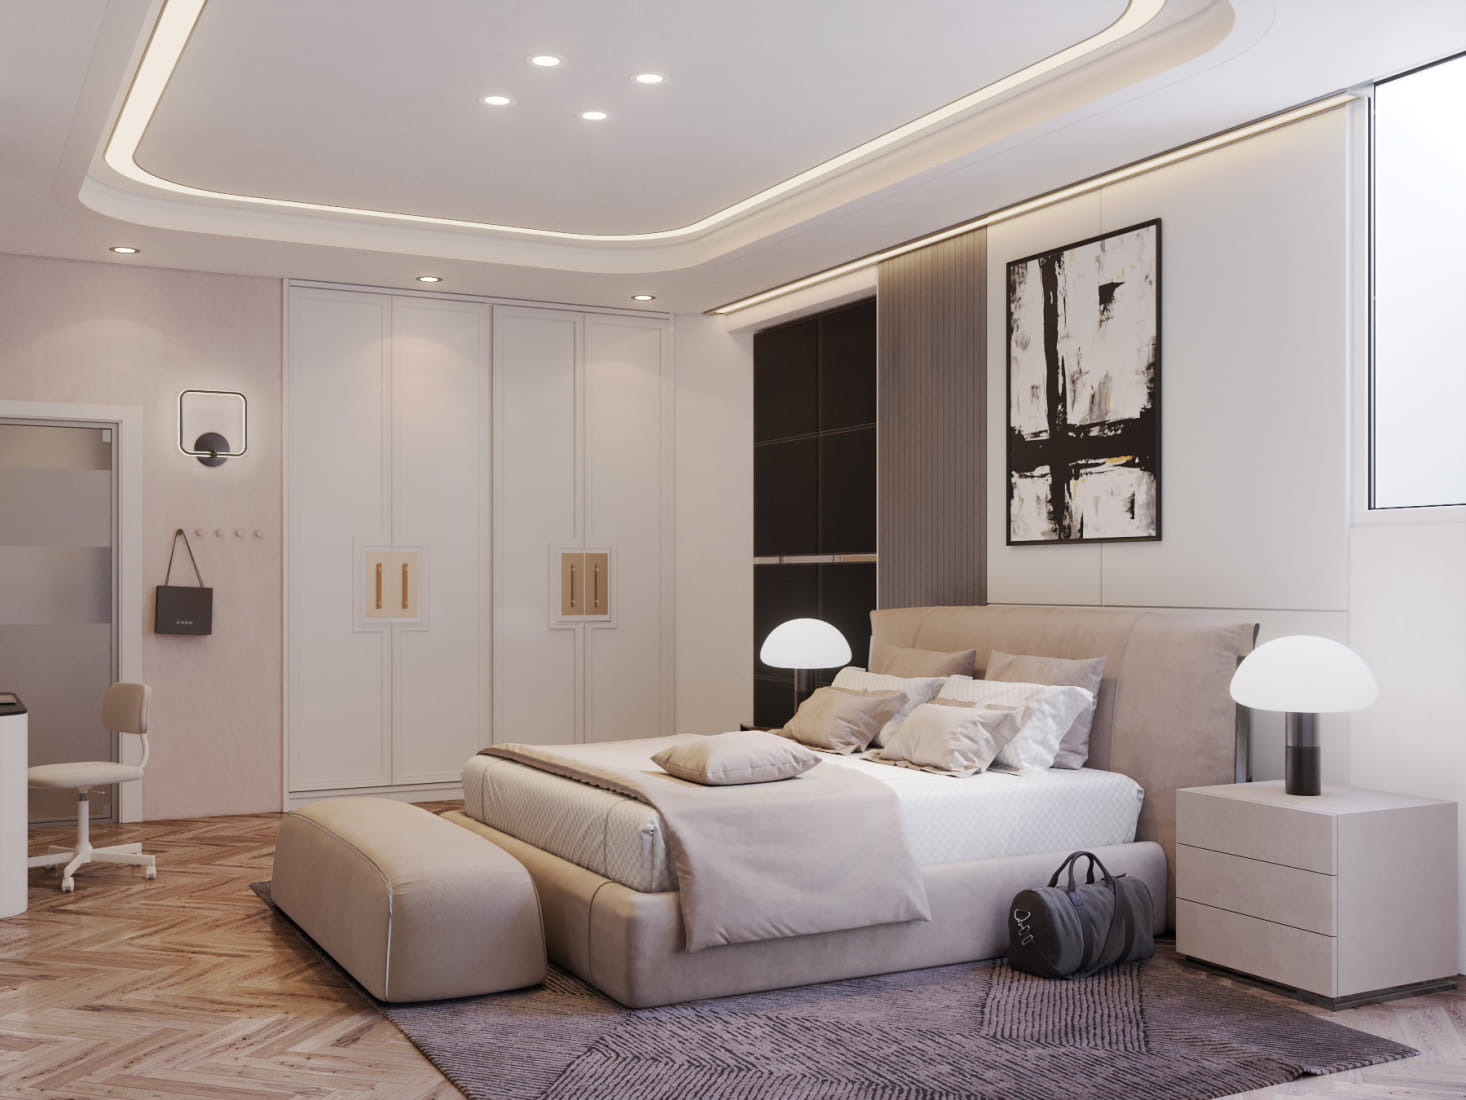 residential-apartment-interior-design